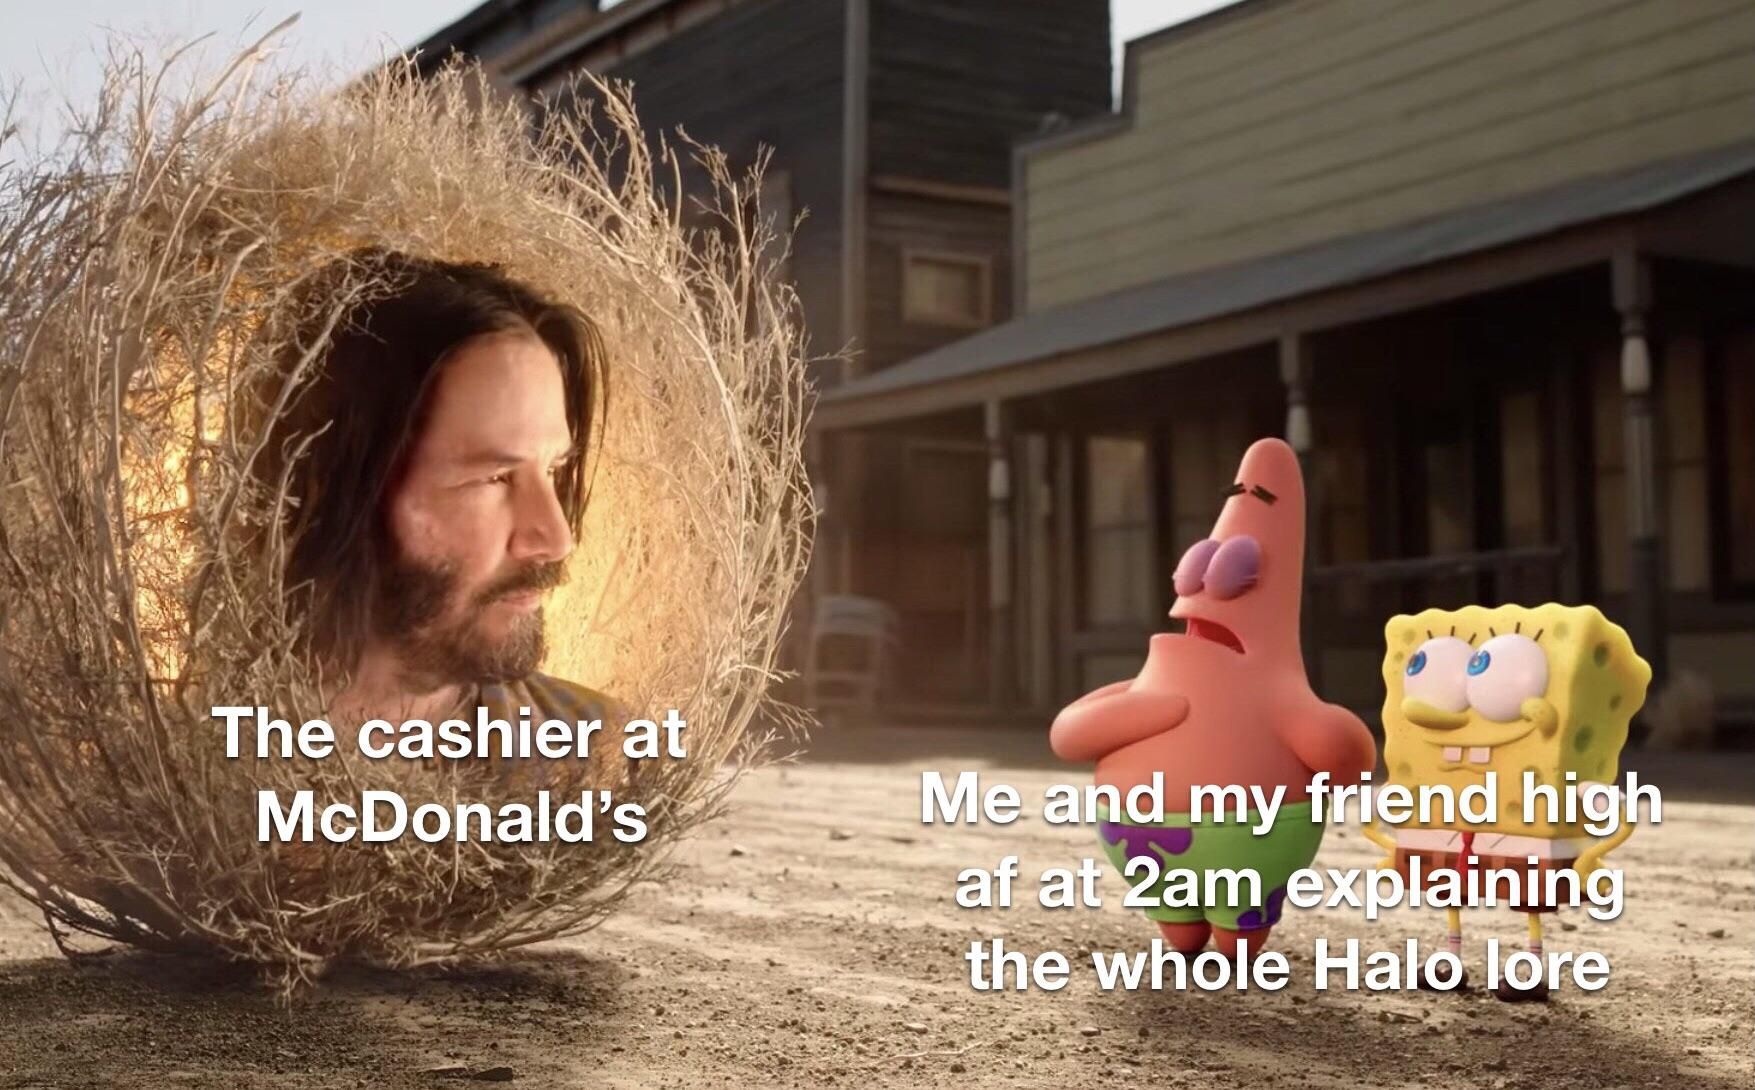 Poor cashier